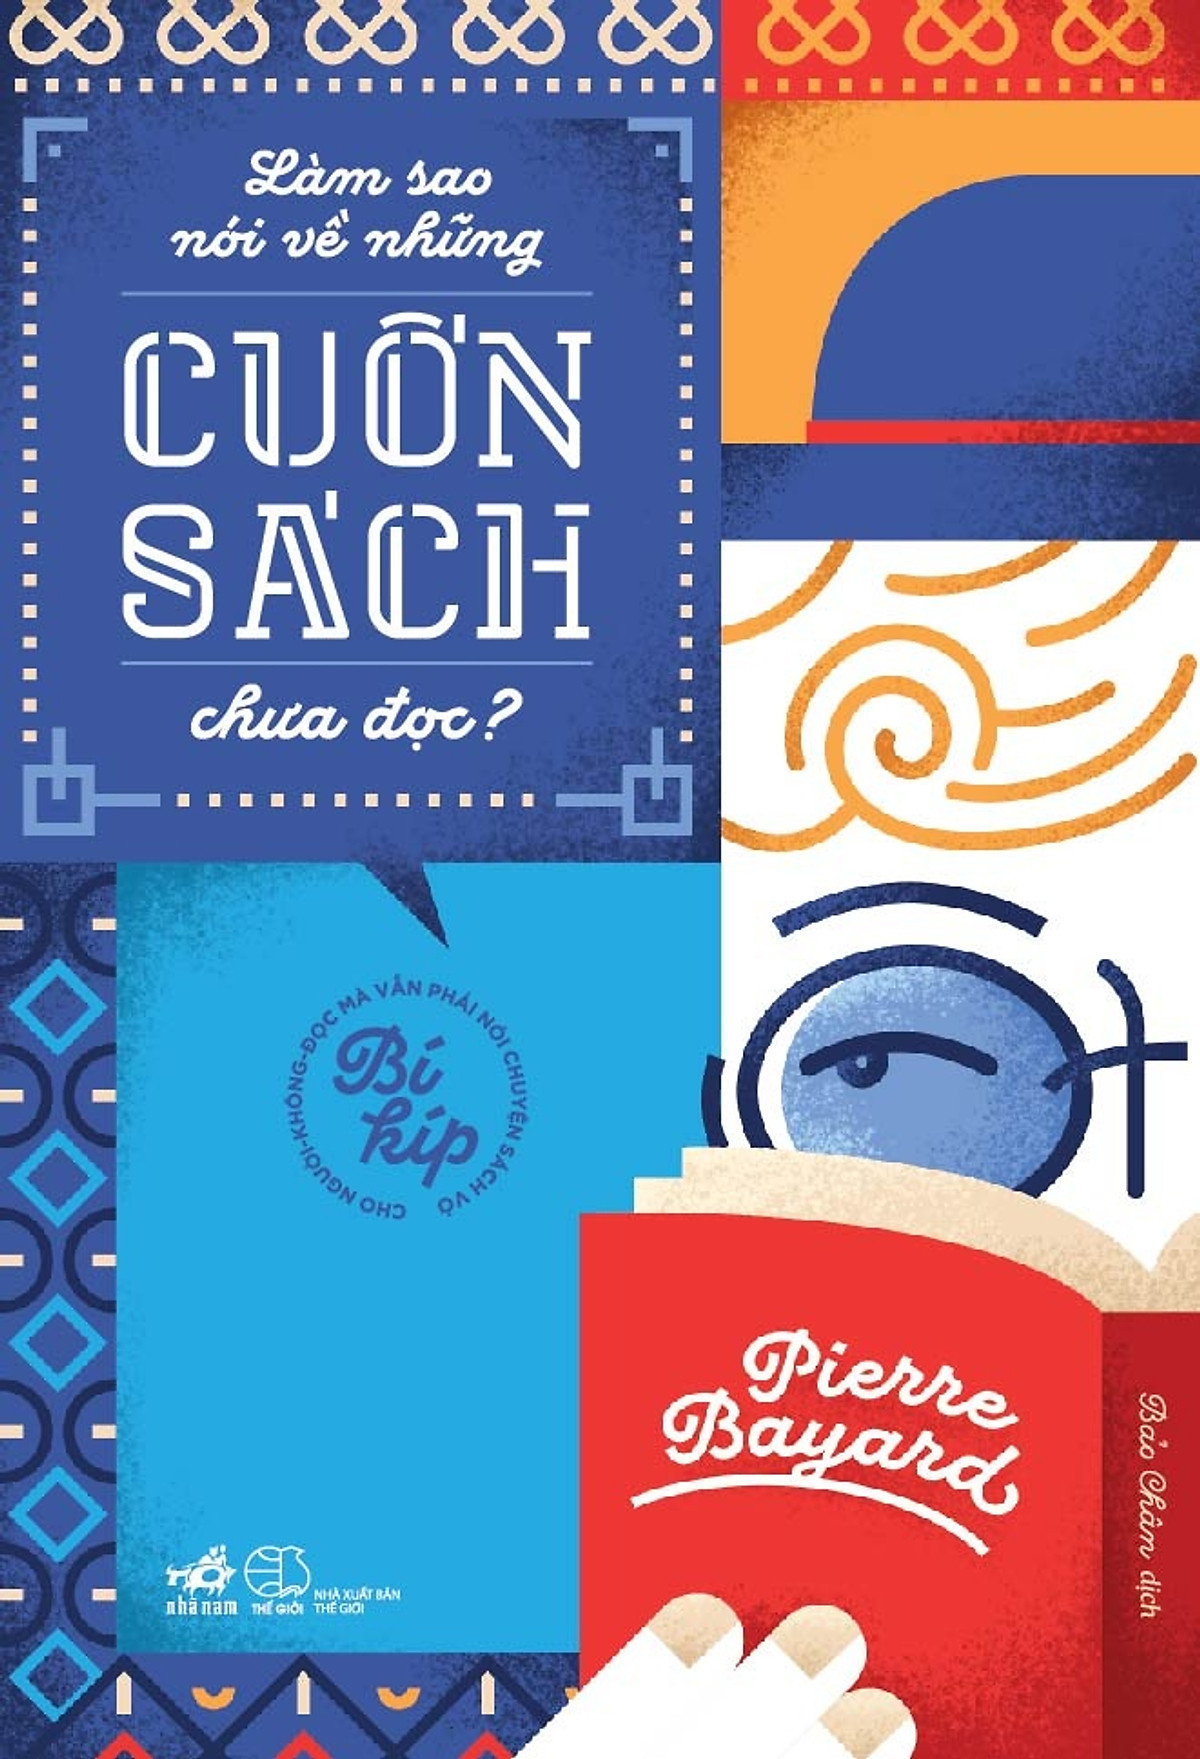 Combo 2 cuốn sách: Thanh lịch như người Pháp, hiếu khách như người Việt + Làm sao nói về những cuốn sách chưa đọc?